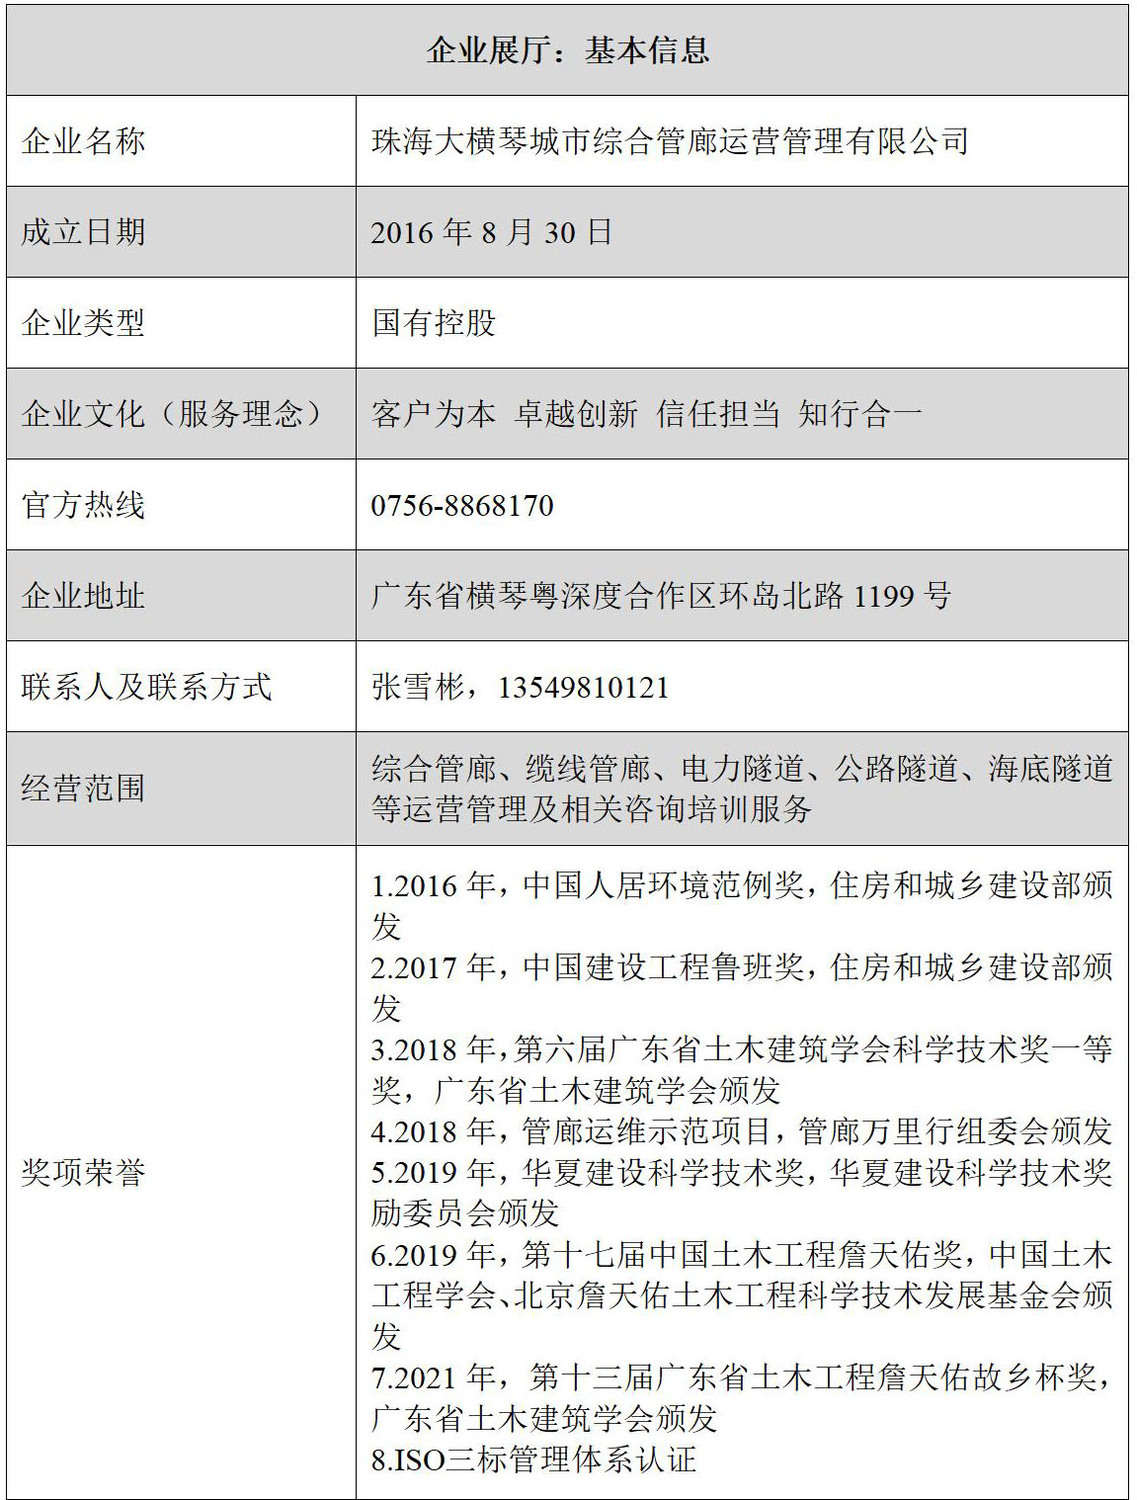 珠海大横琴城市综合管廊运营管理有限公司企业信息表格.jpg